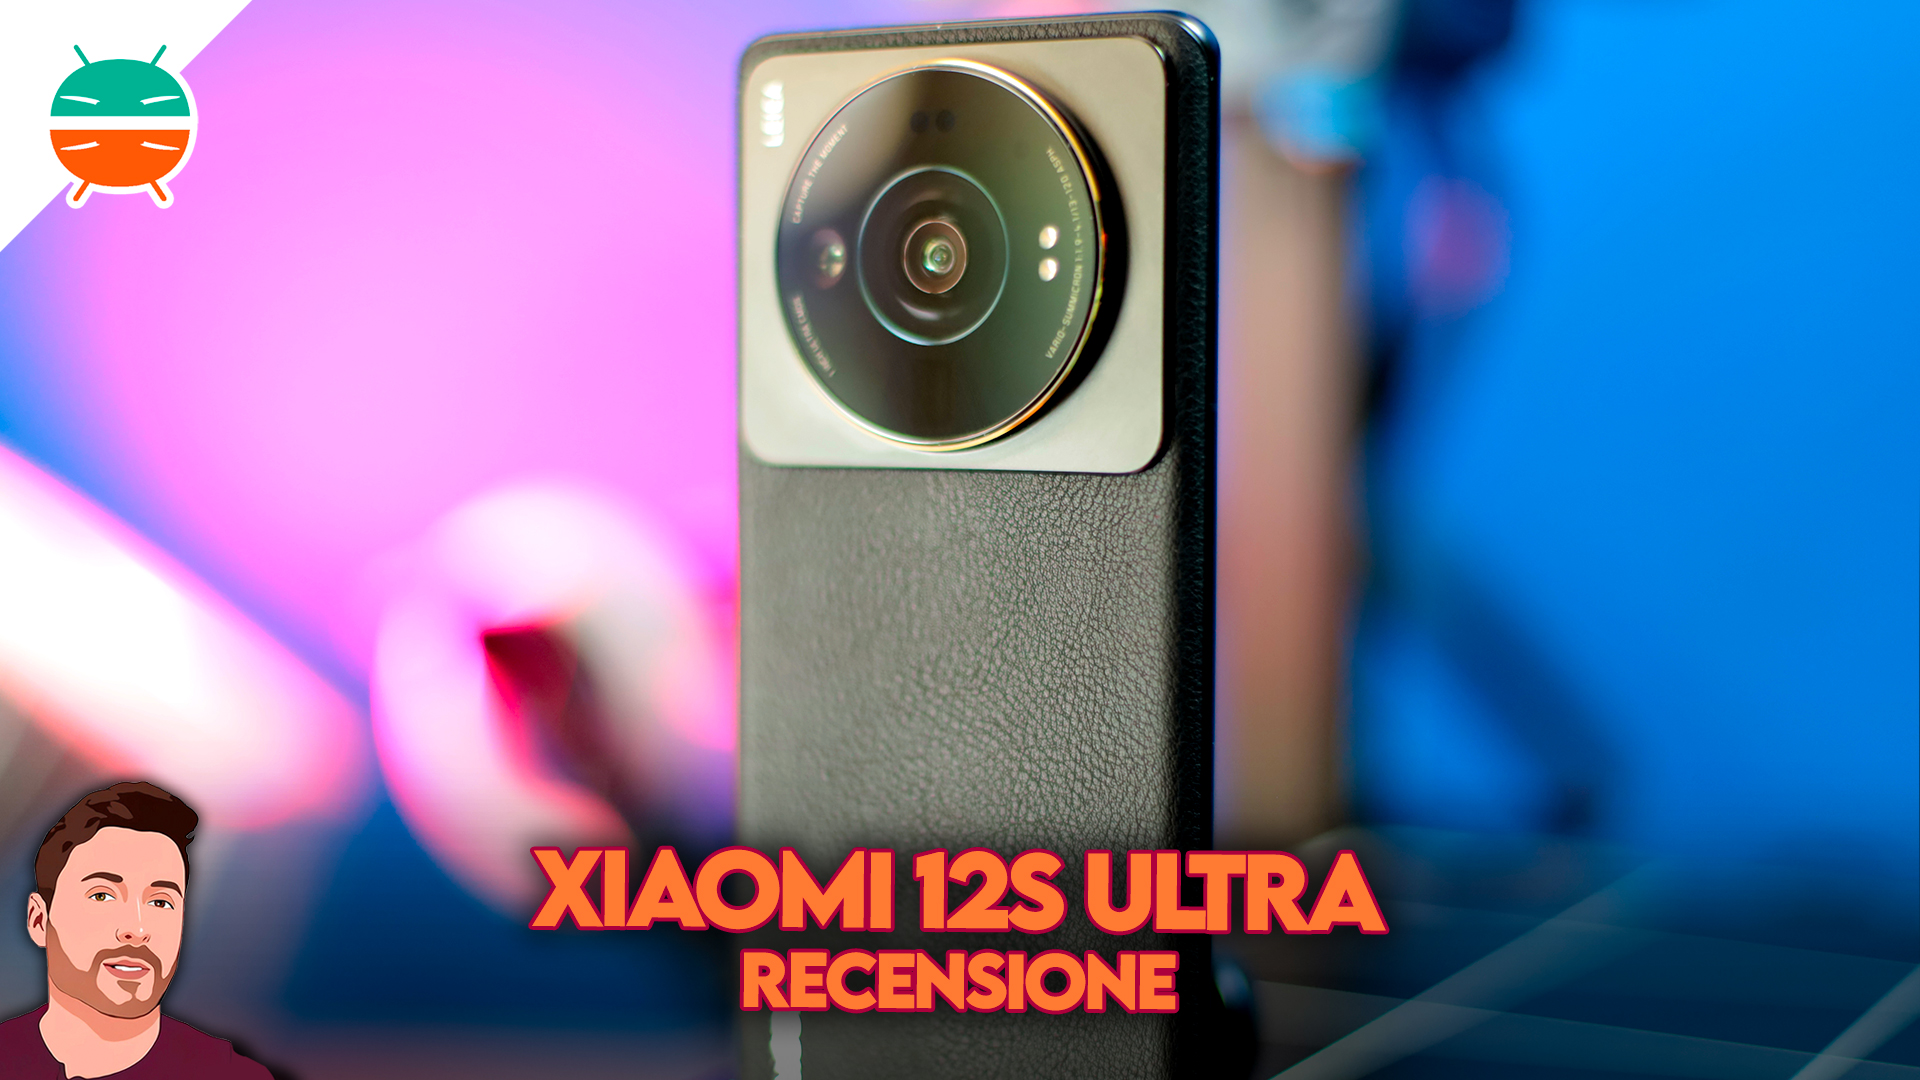 Xiaomi 12 Ultra - ESSE SMARTPHONE VEM PARA ARREBENTAR A BOCA DO